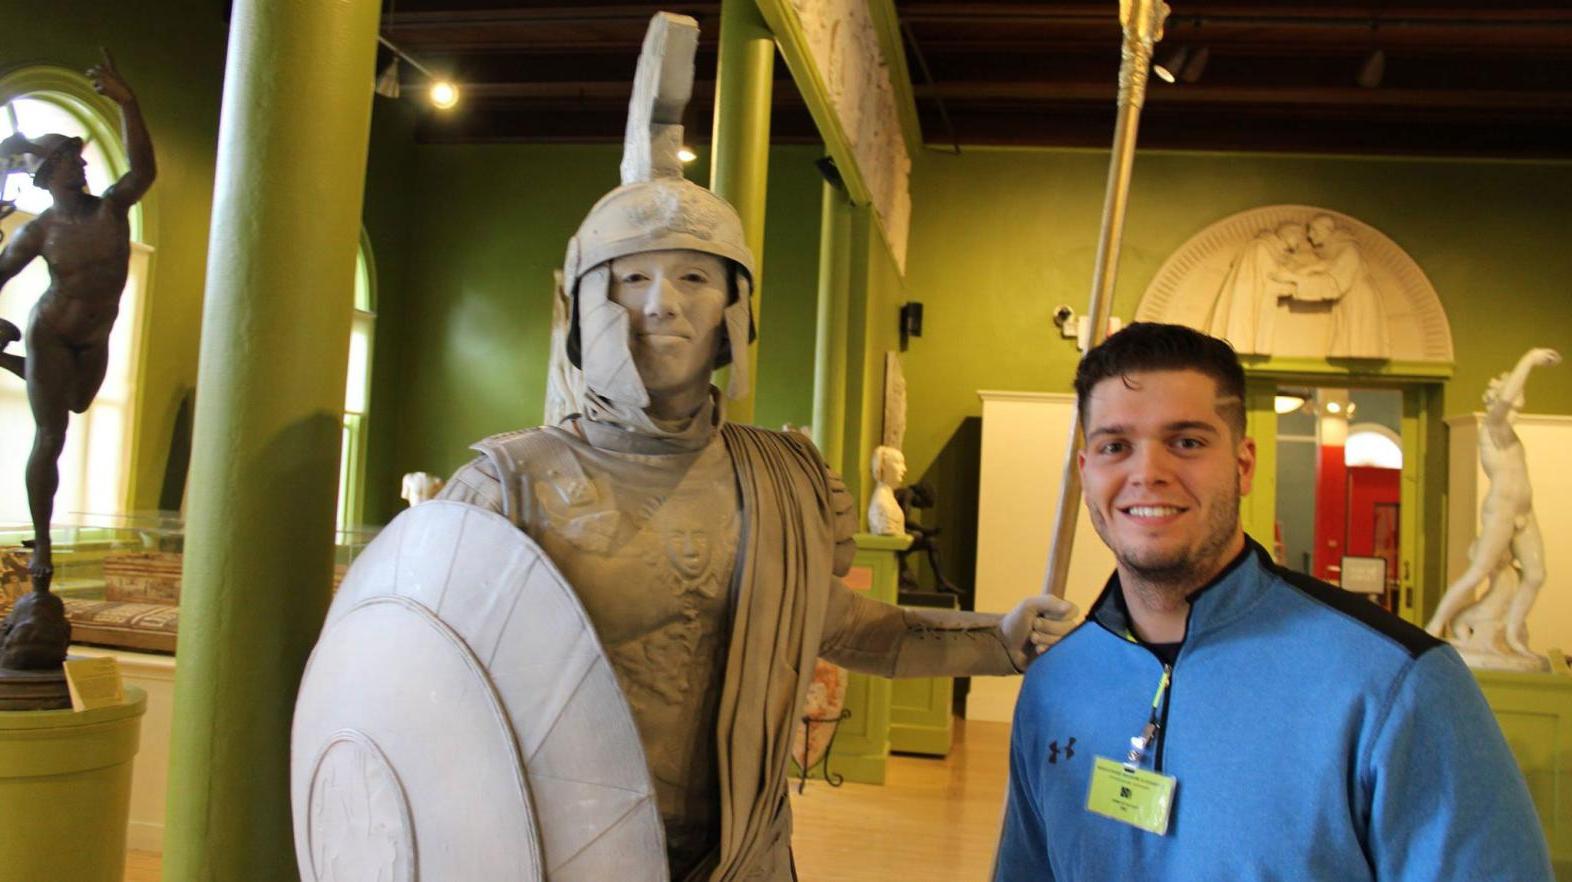 Hogan Tomkunas poses with a statue at his internship.